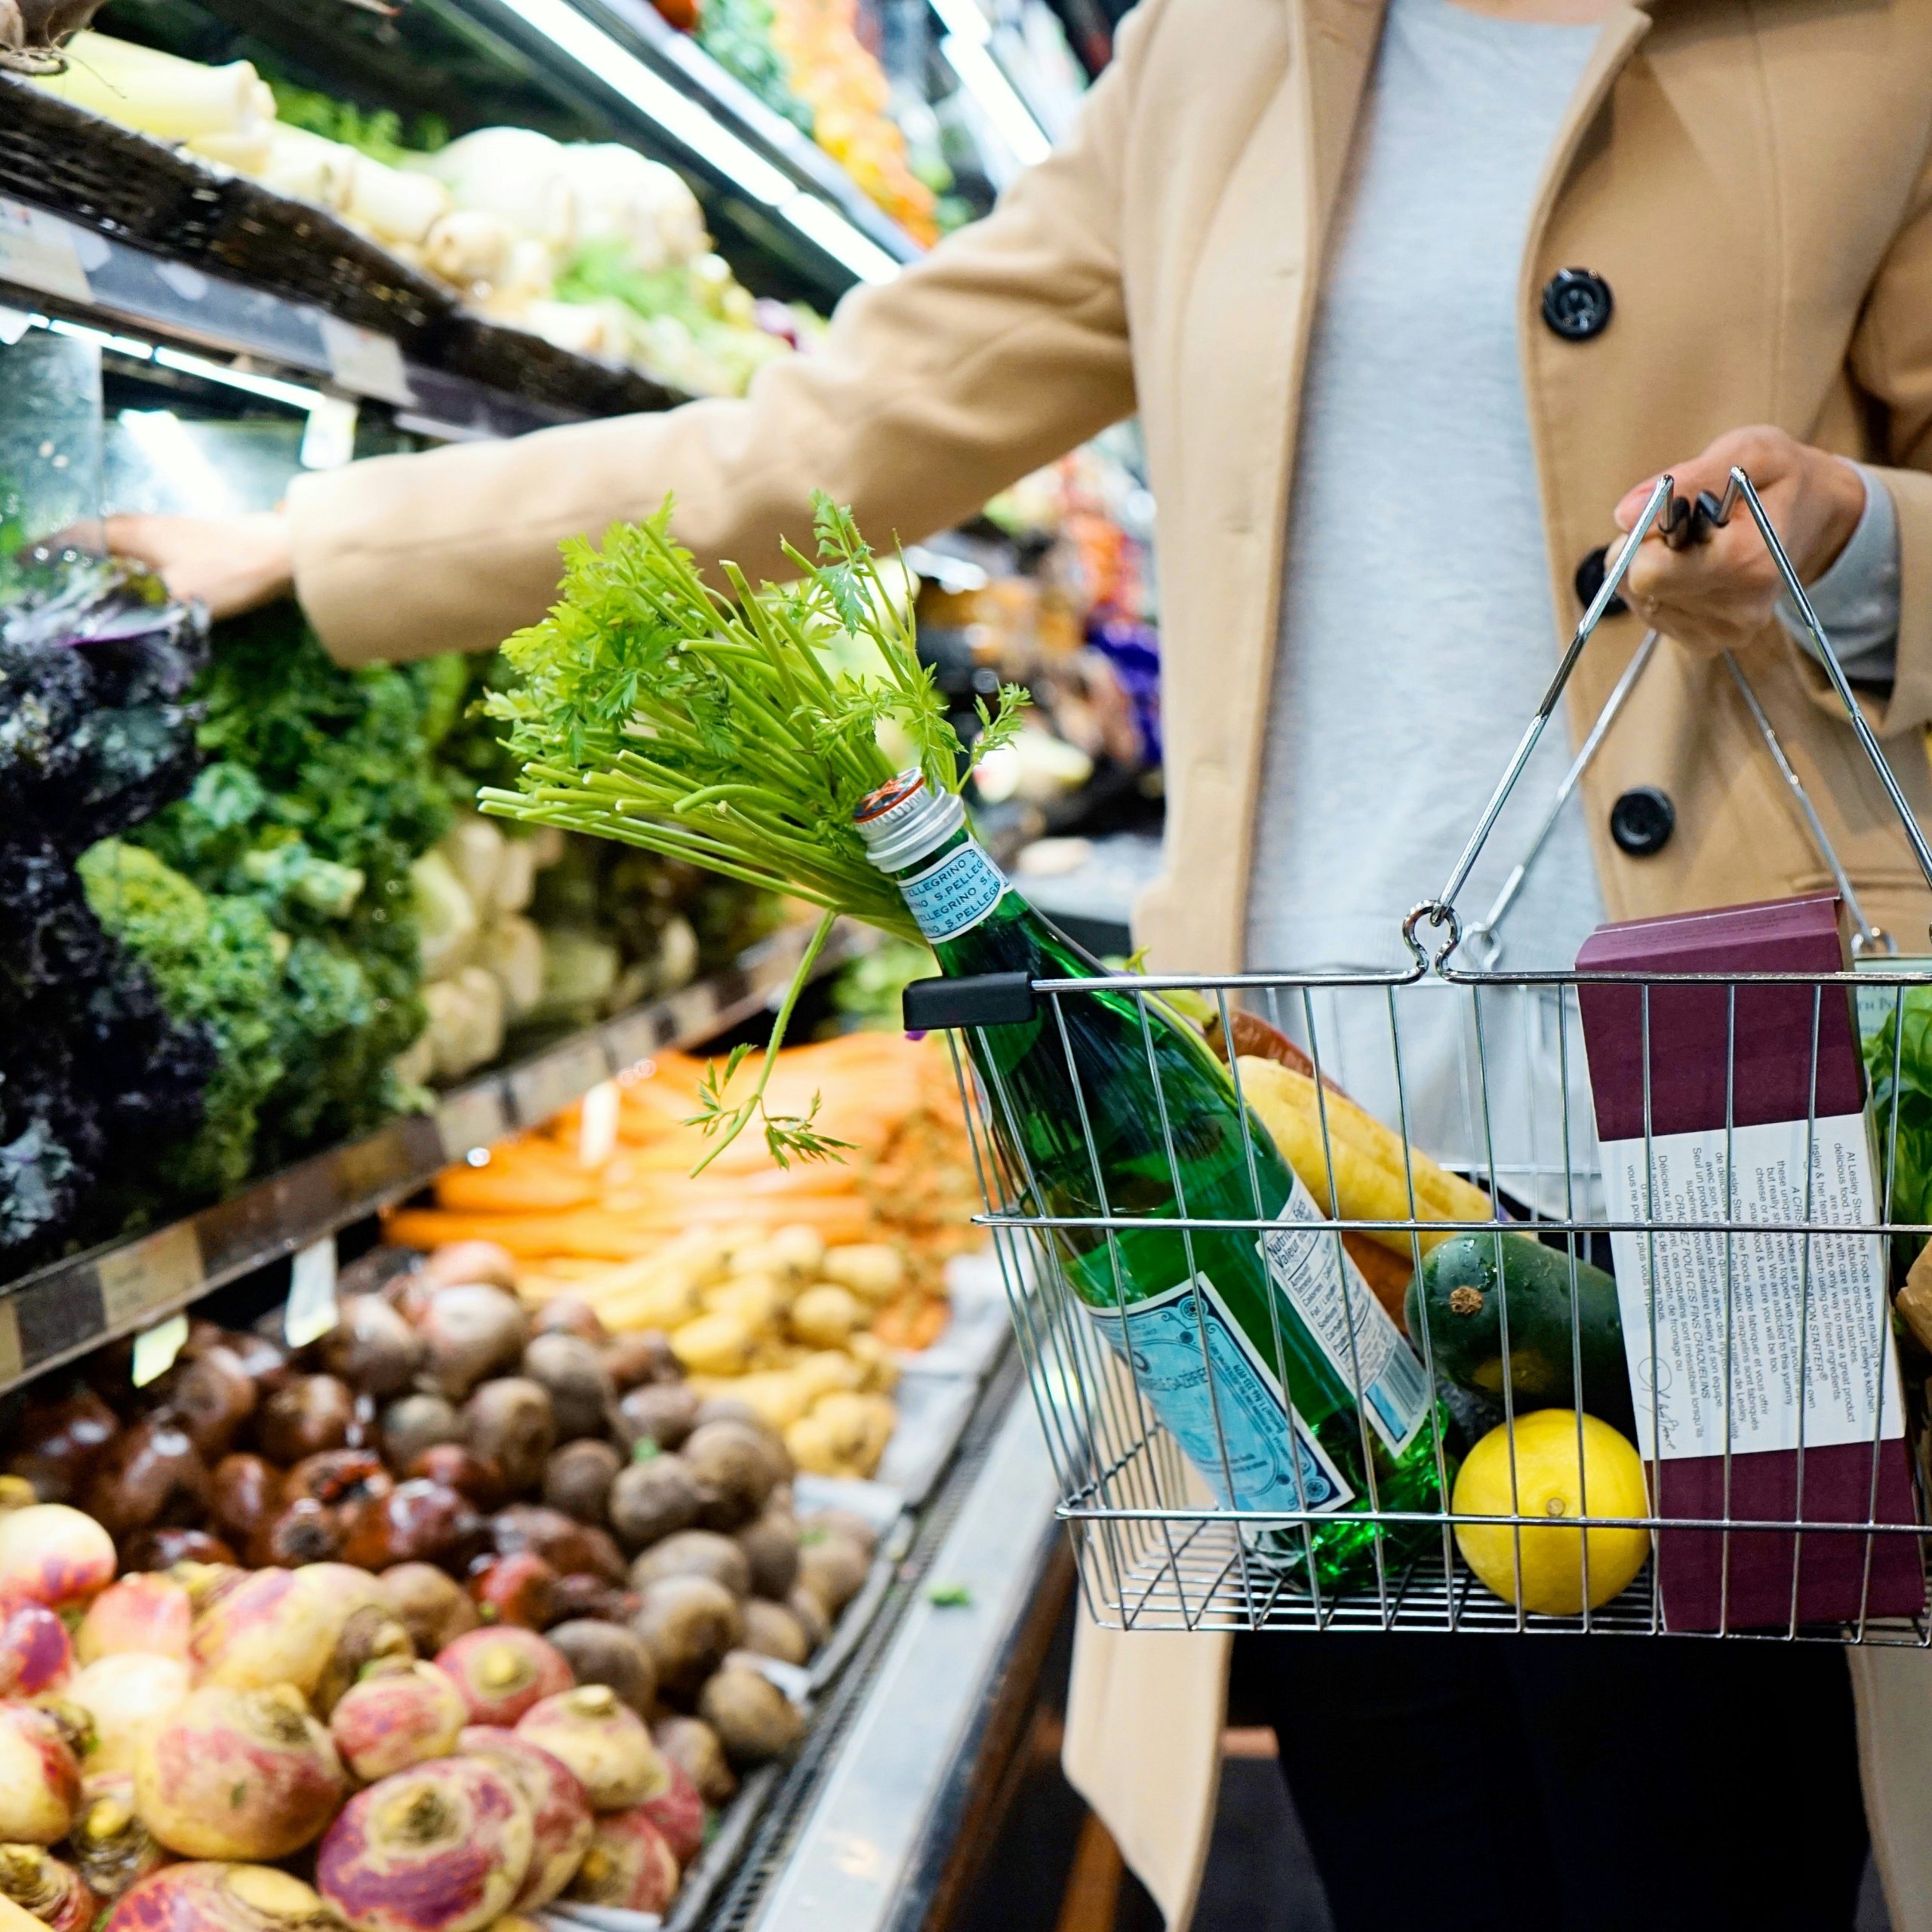 De Brusselse regering zet een nieuwe stap in de strijd tegen voedselverspilling in supermarkten